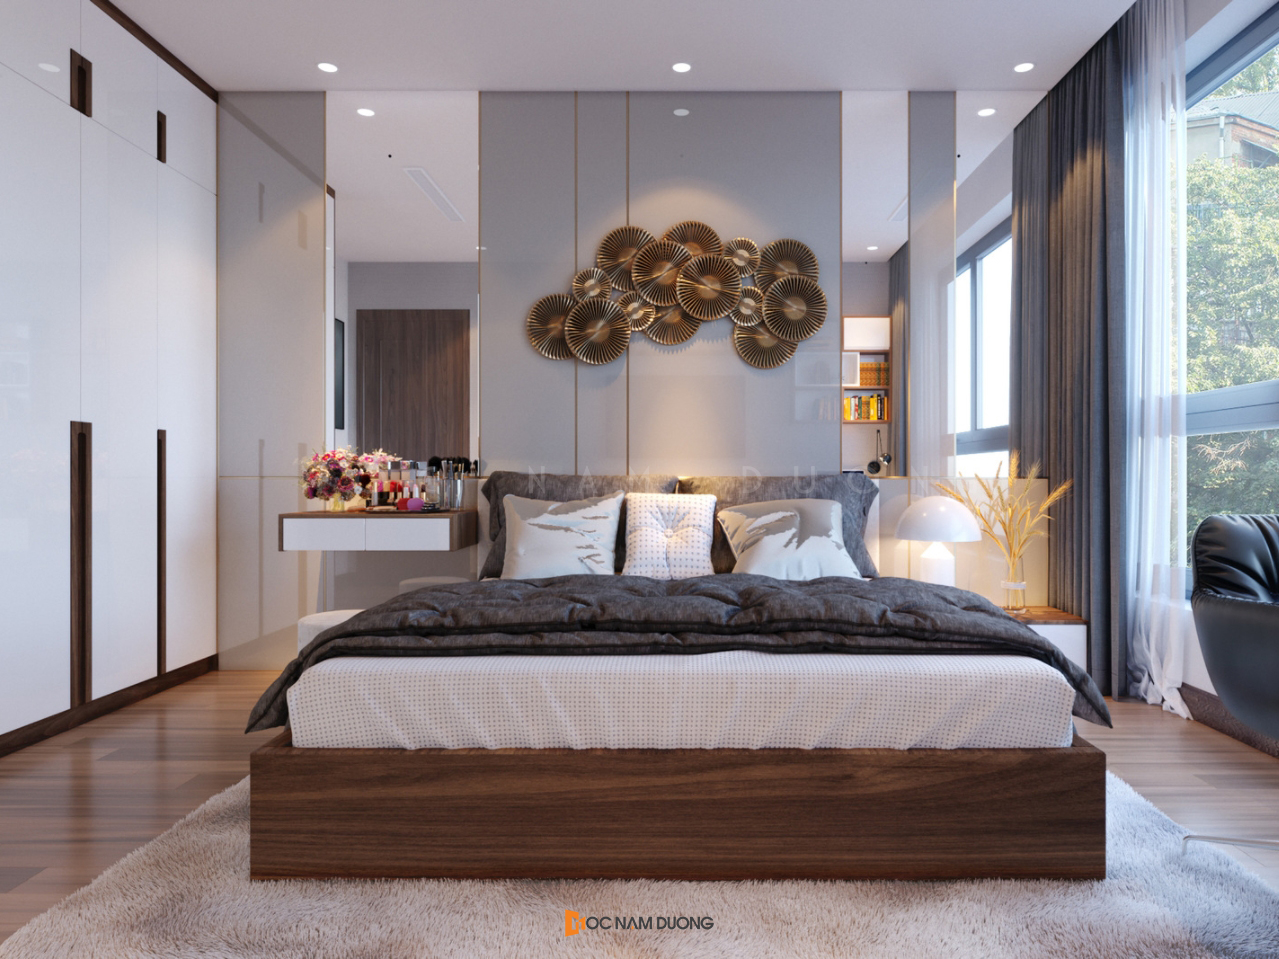 Sử dụng decor treo tường mang lại nét đẹp thẩm mỹ cao cho phòng ngủ